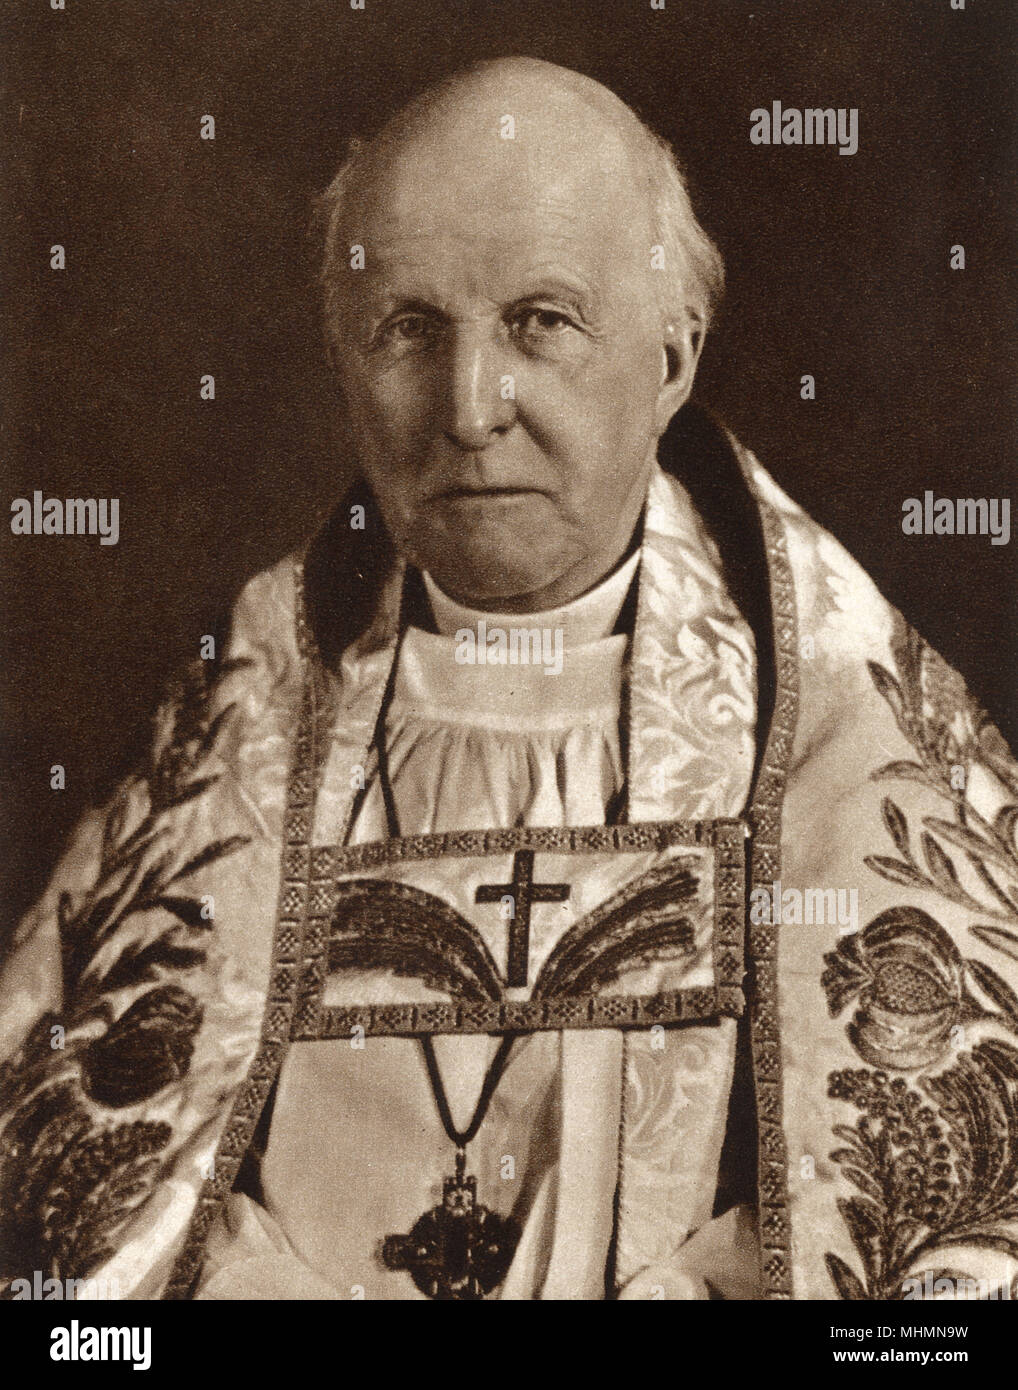 Cosmo Gordon Lang, 1er baron Lang de Lambeth, l'archevêque de Canterbury(1864-1945), qui a présidé le couronnement du roi George VI et La Reine Elizabeth à l'abbaye de Westminster le 12 mai 1937. Date : 1937 Banque D'Images